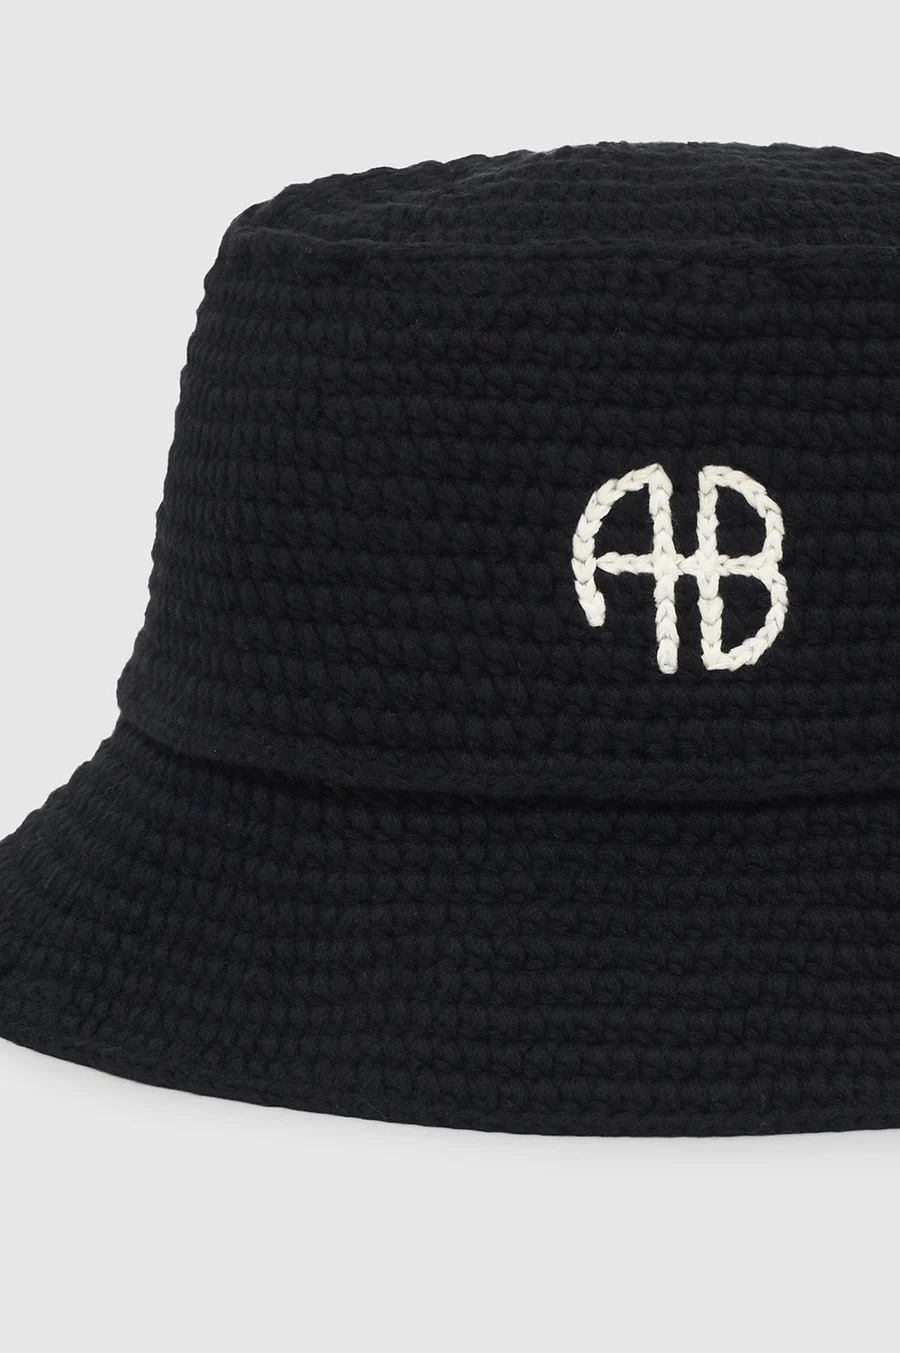 ANINE BING Darra Bucket Hat in Black XS/S